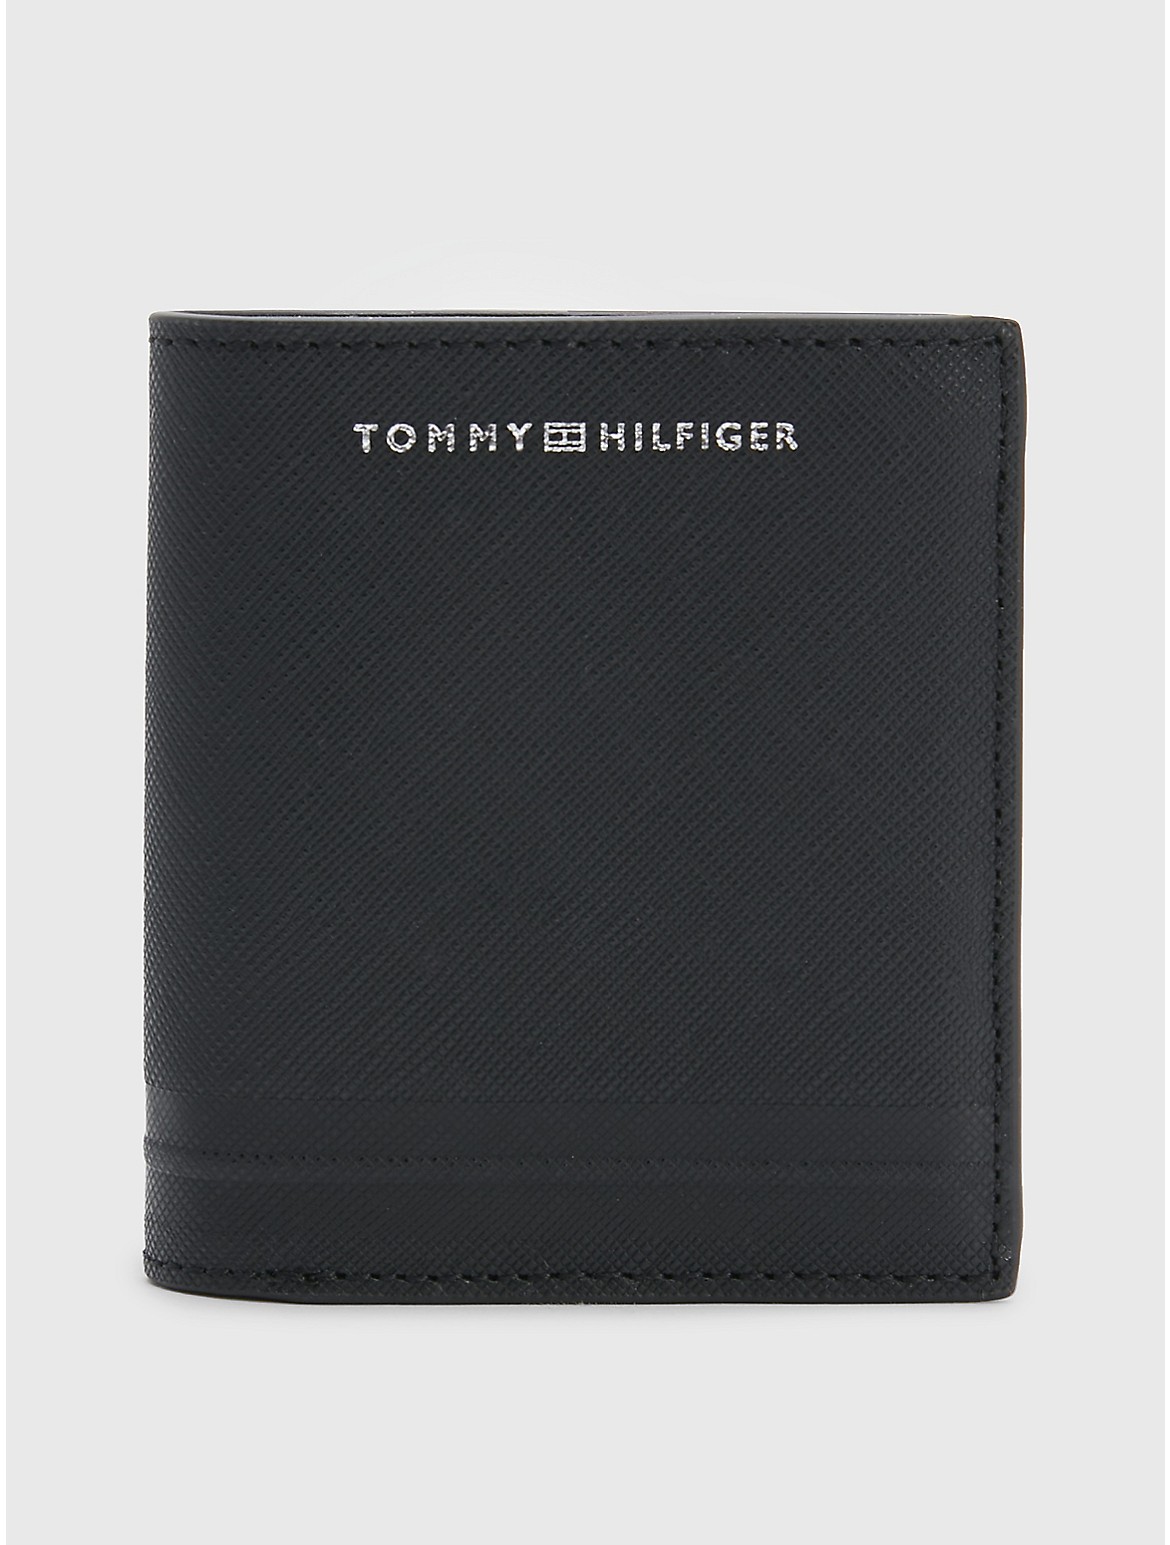 Tommy Hilfiger Men's Hilfiger Leather Bifold Wallet - Black